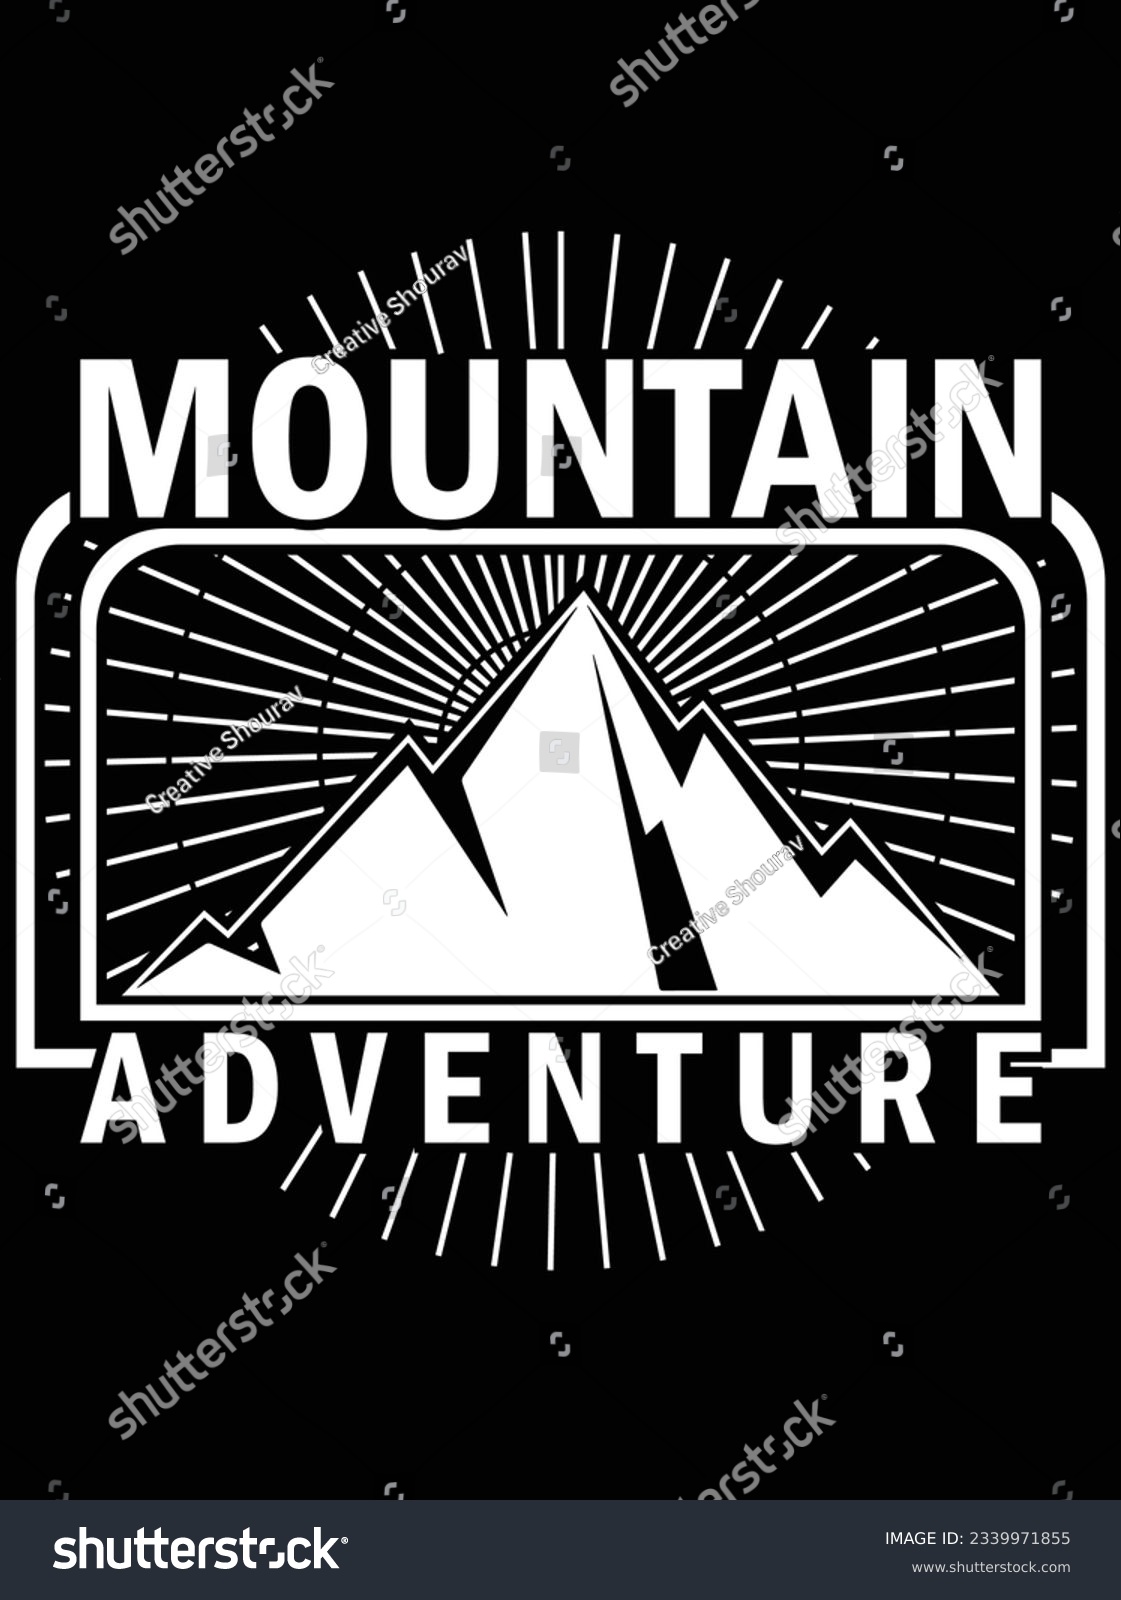 SVG of Mountain adventure vector art design, eps file. design file for t-shirt. SVG, EPS cuttable design file svg